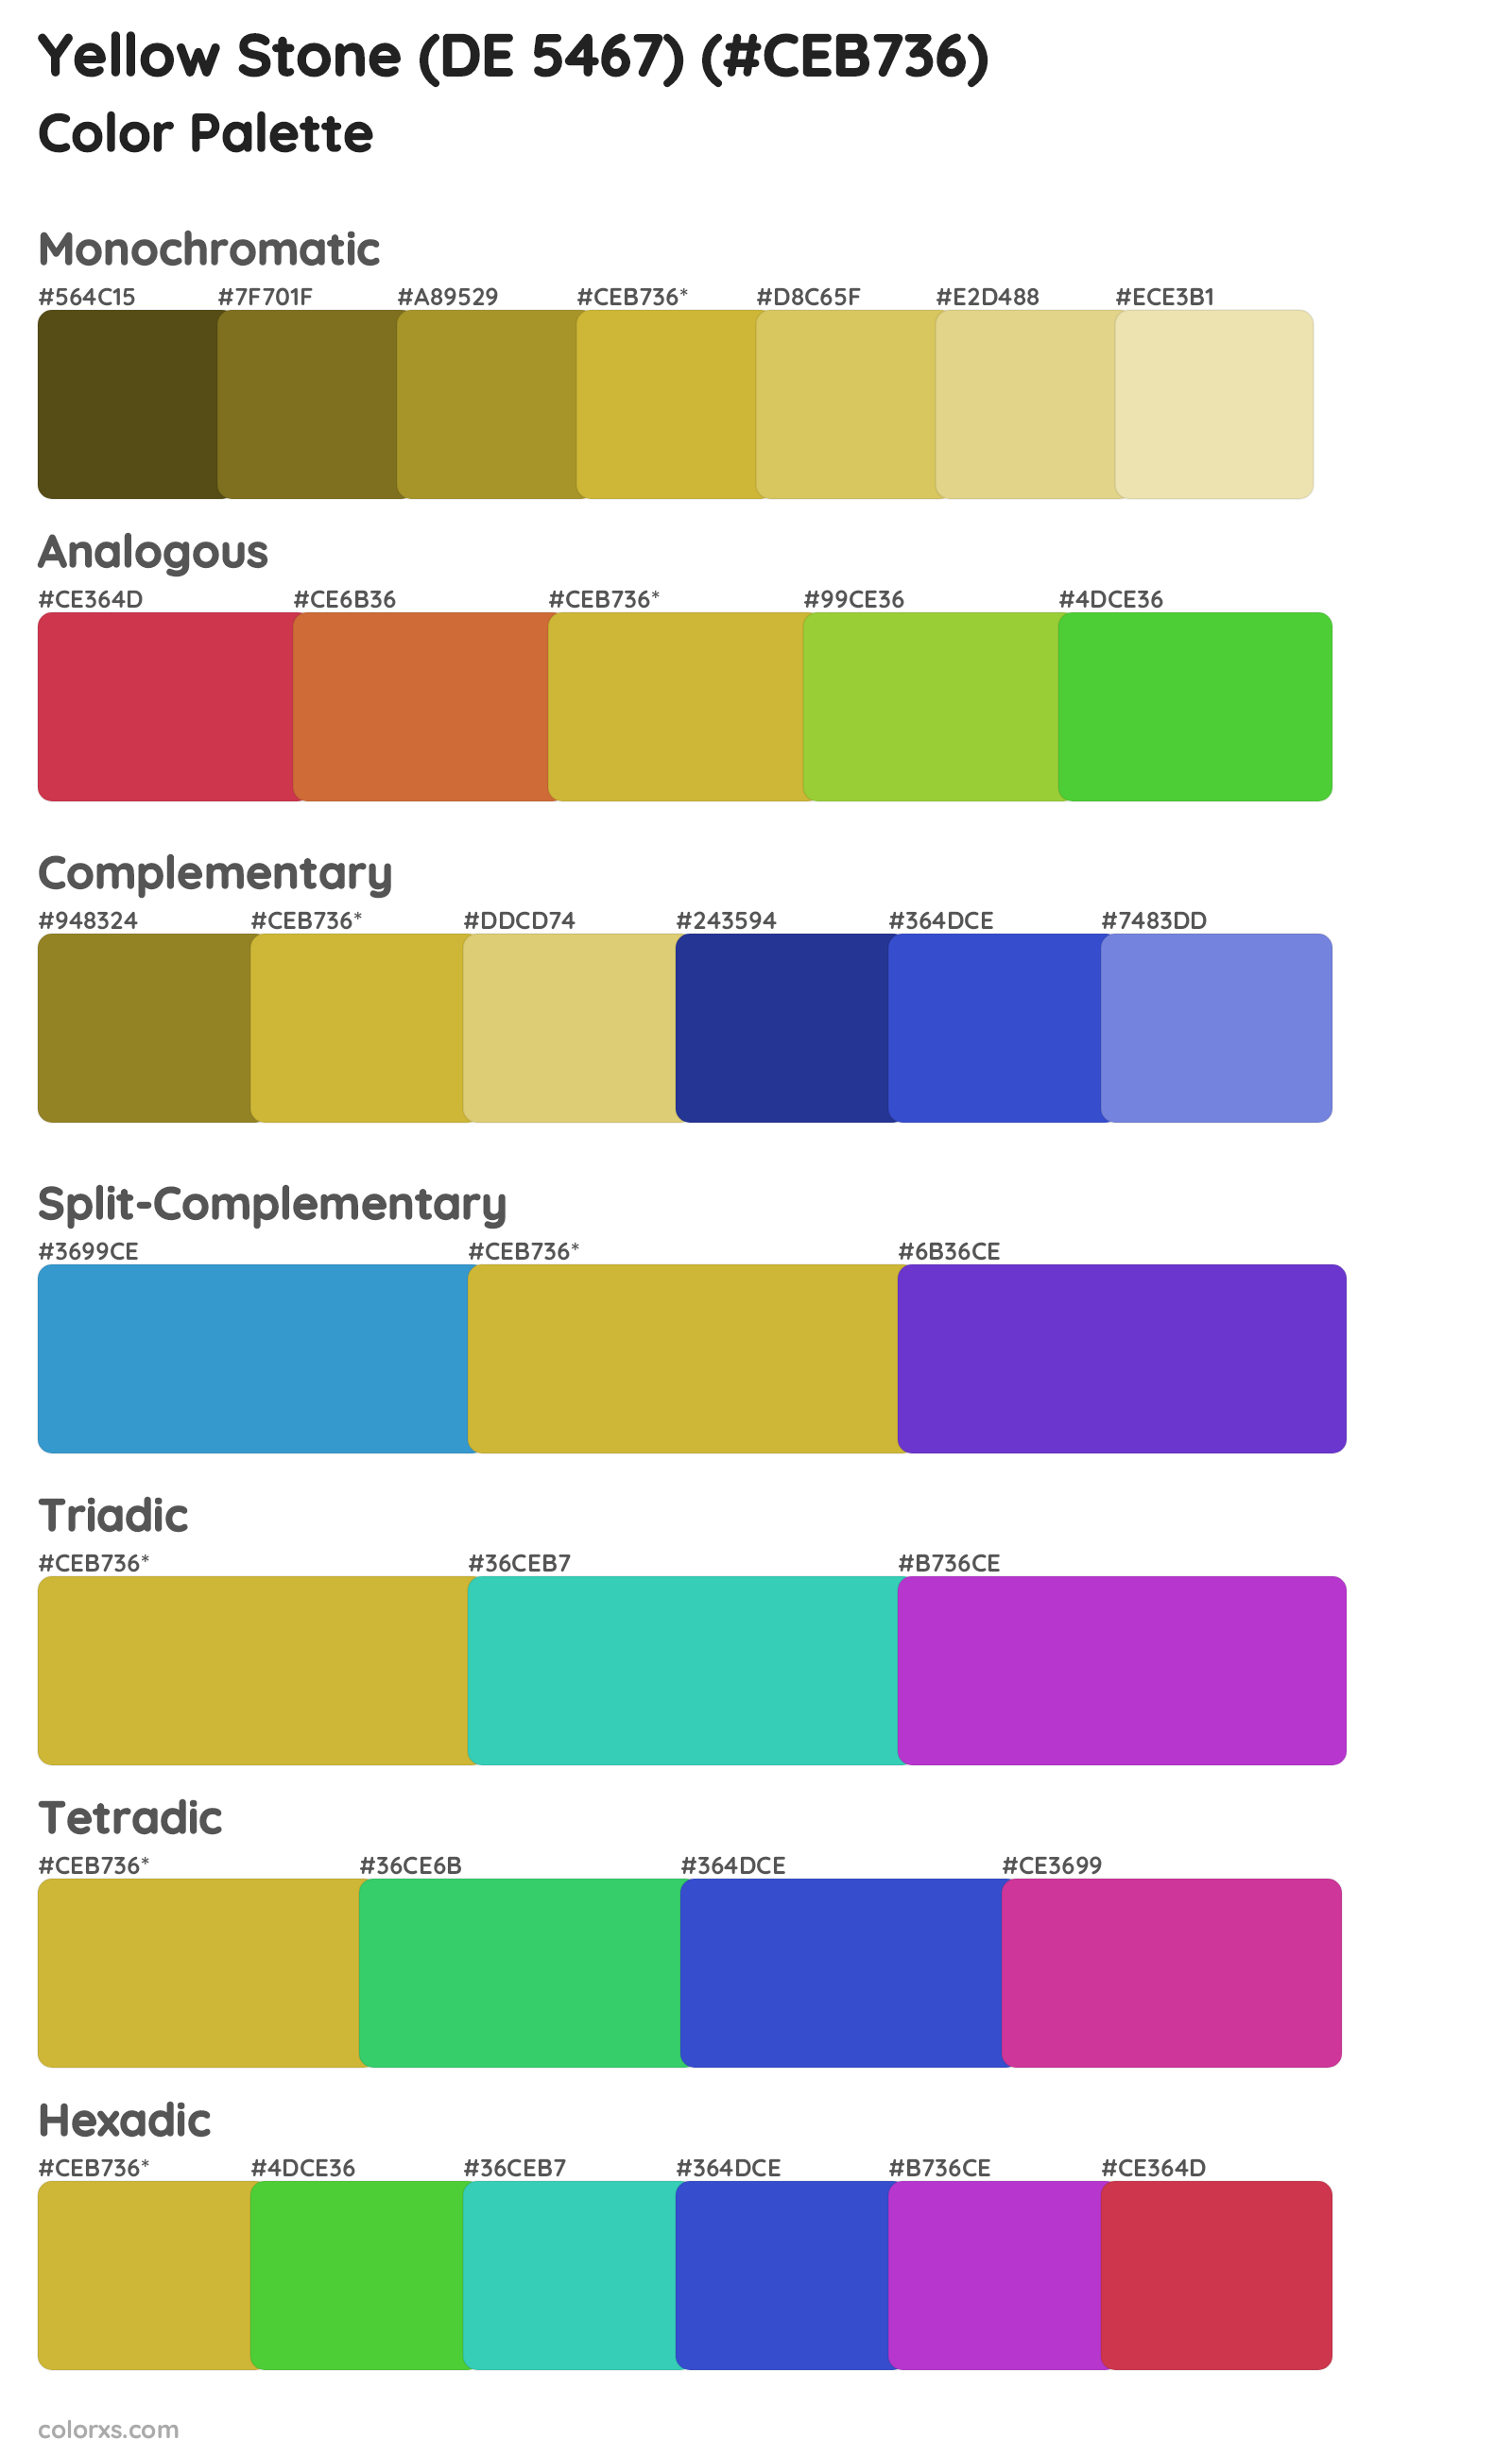 Yellow Stone (DE 5467) Color Scheme Palettes